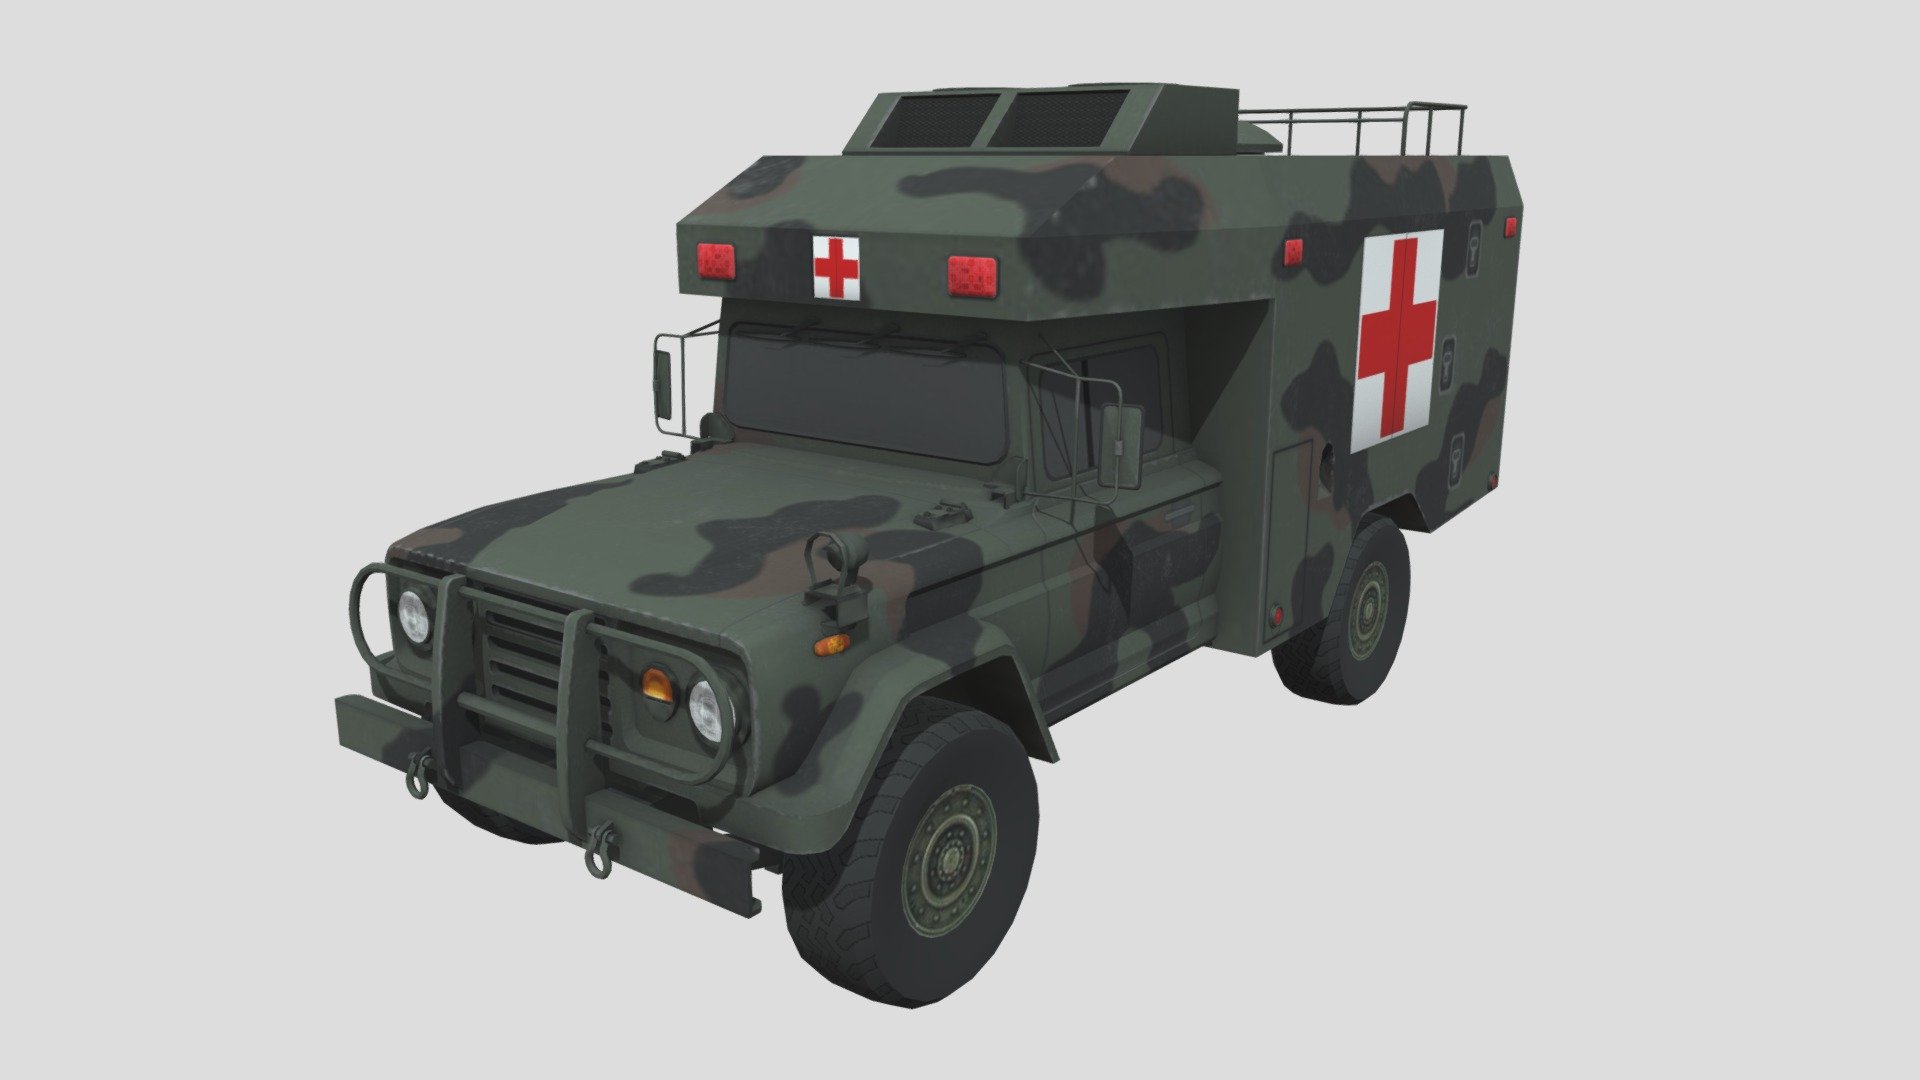 K-312a1 (km451) Ambulance - K-312a1 - 3D model by Uniform008 3d model